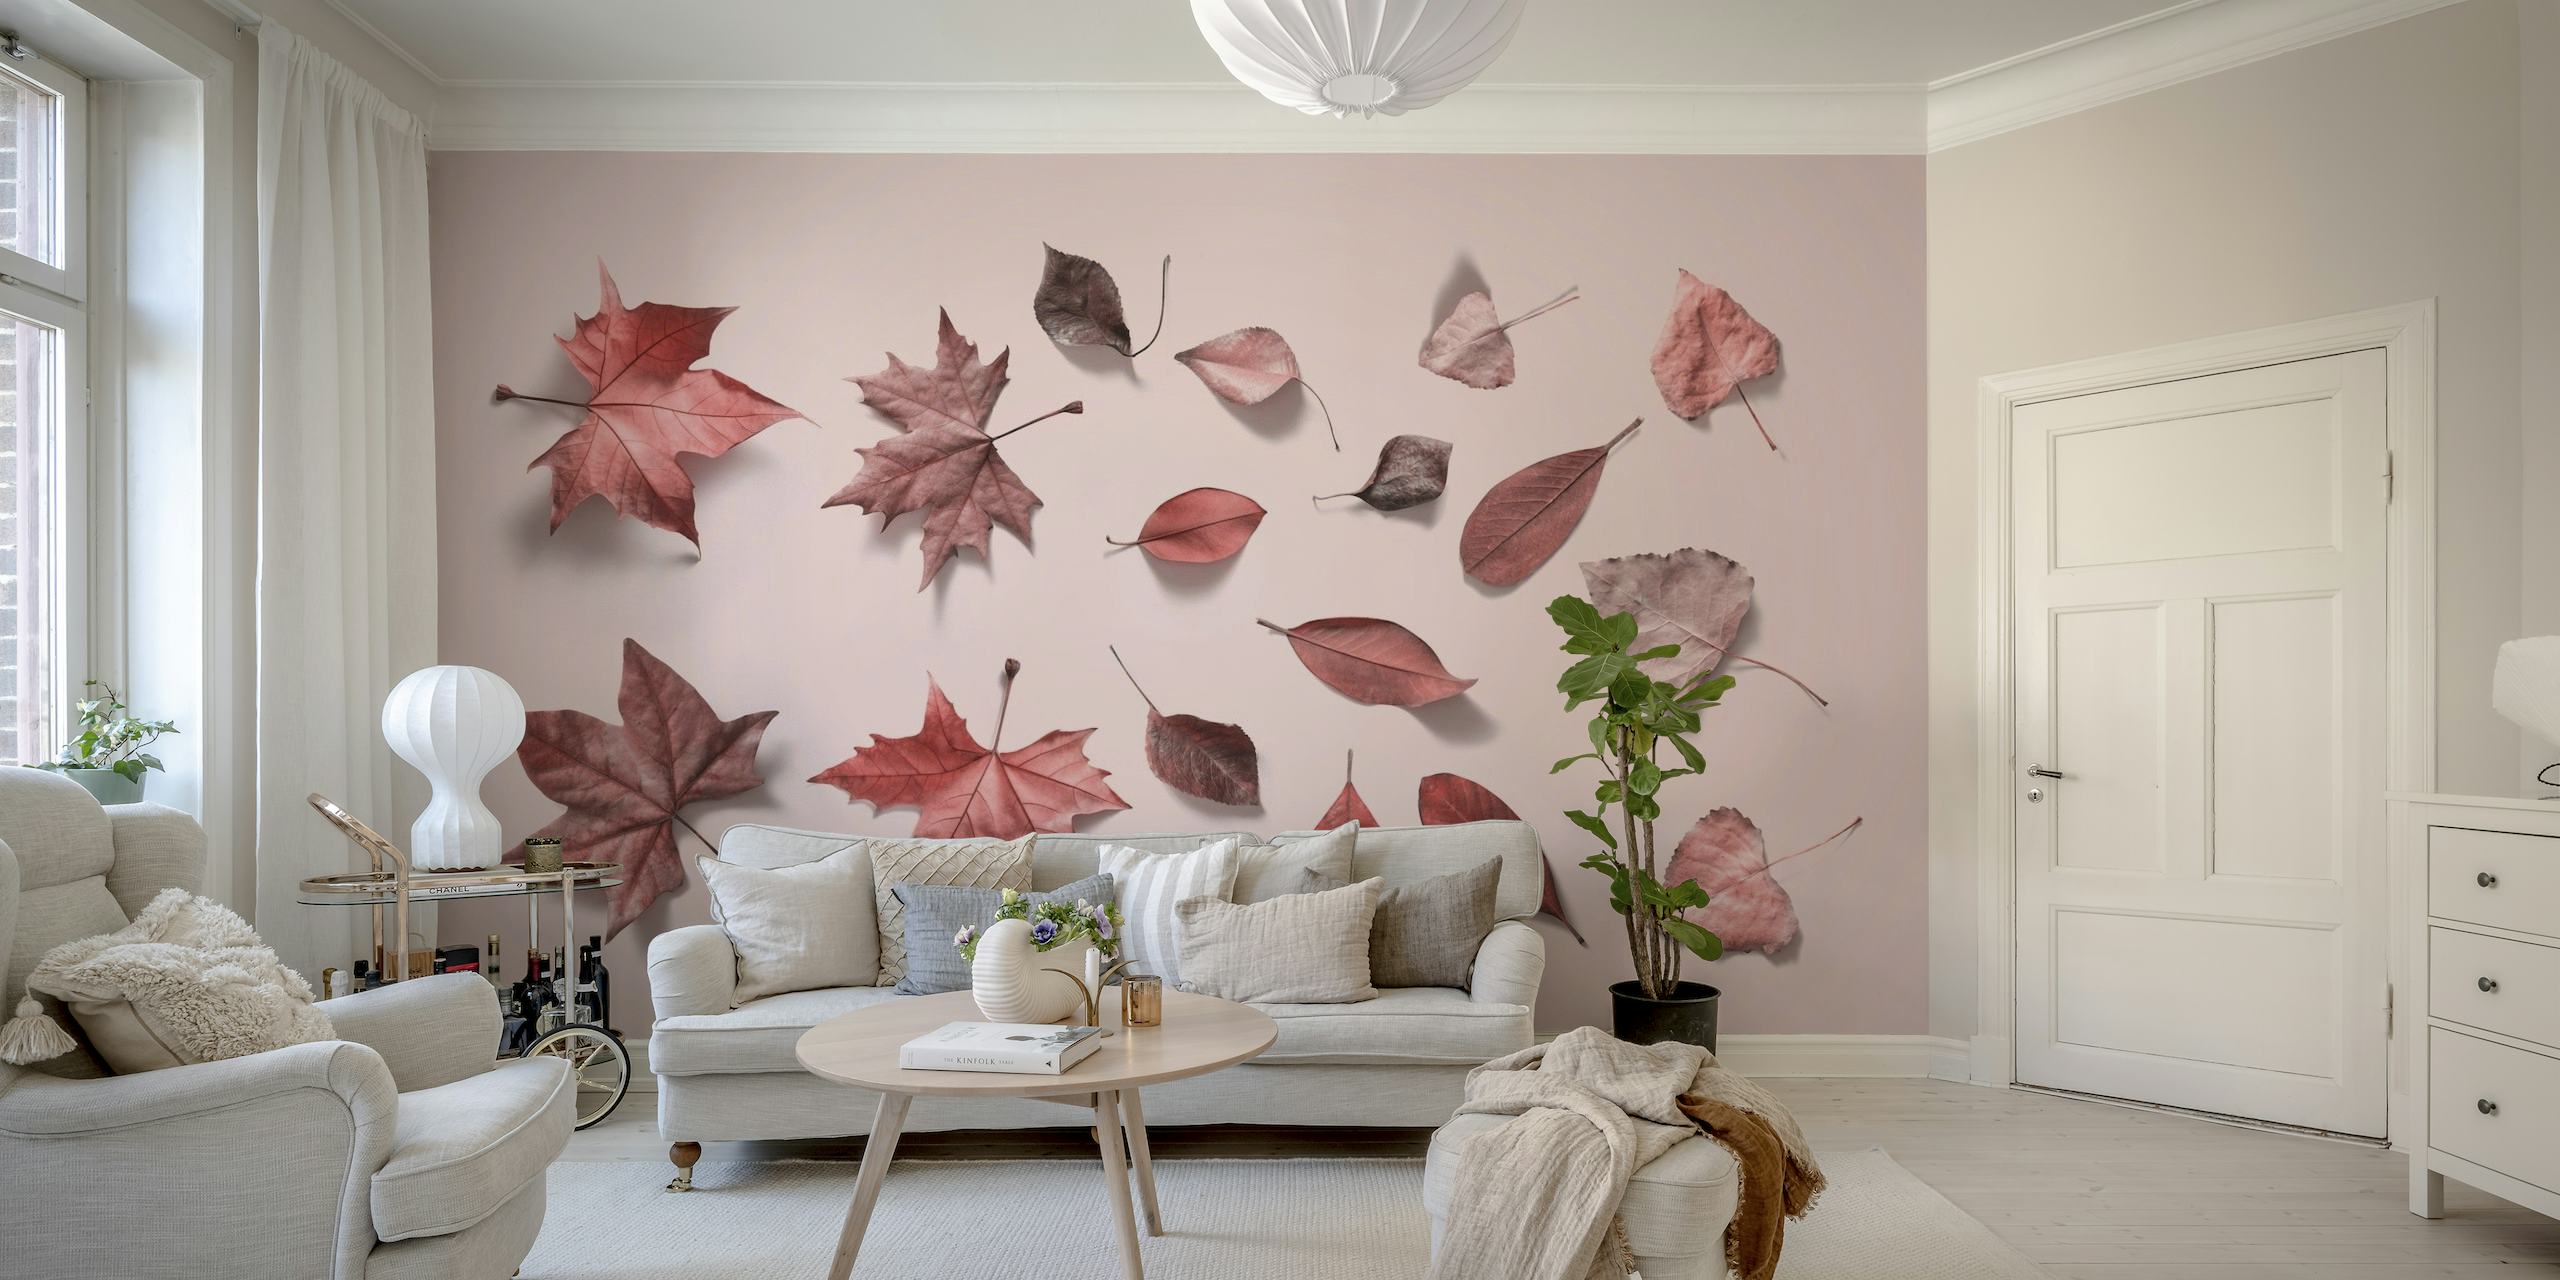 Fotomural de color rosa claro con una disposición dispersa de hojas de otoño en varios tonos de rosa.